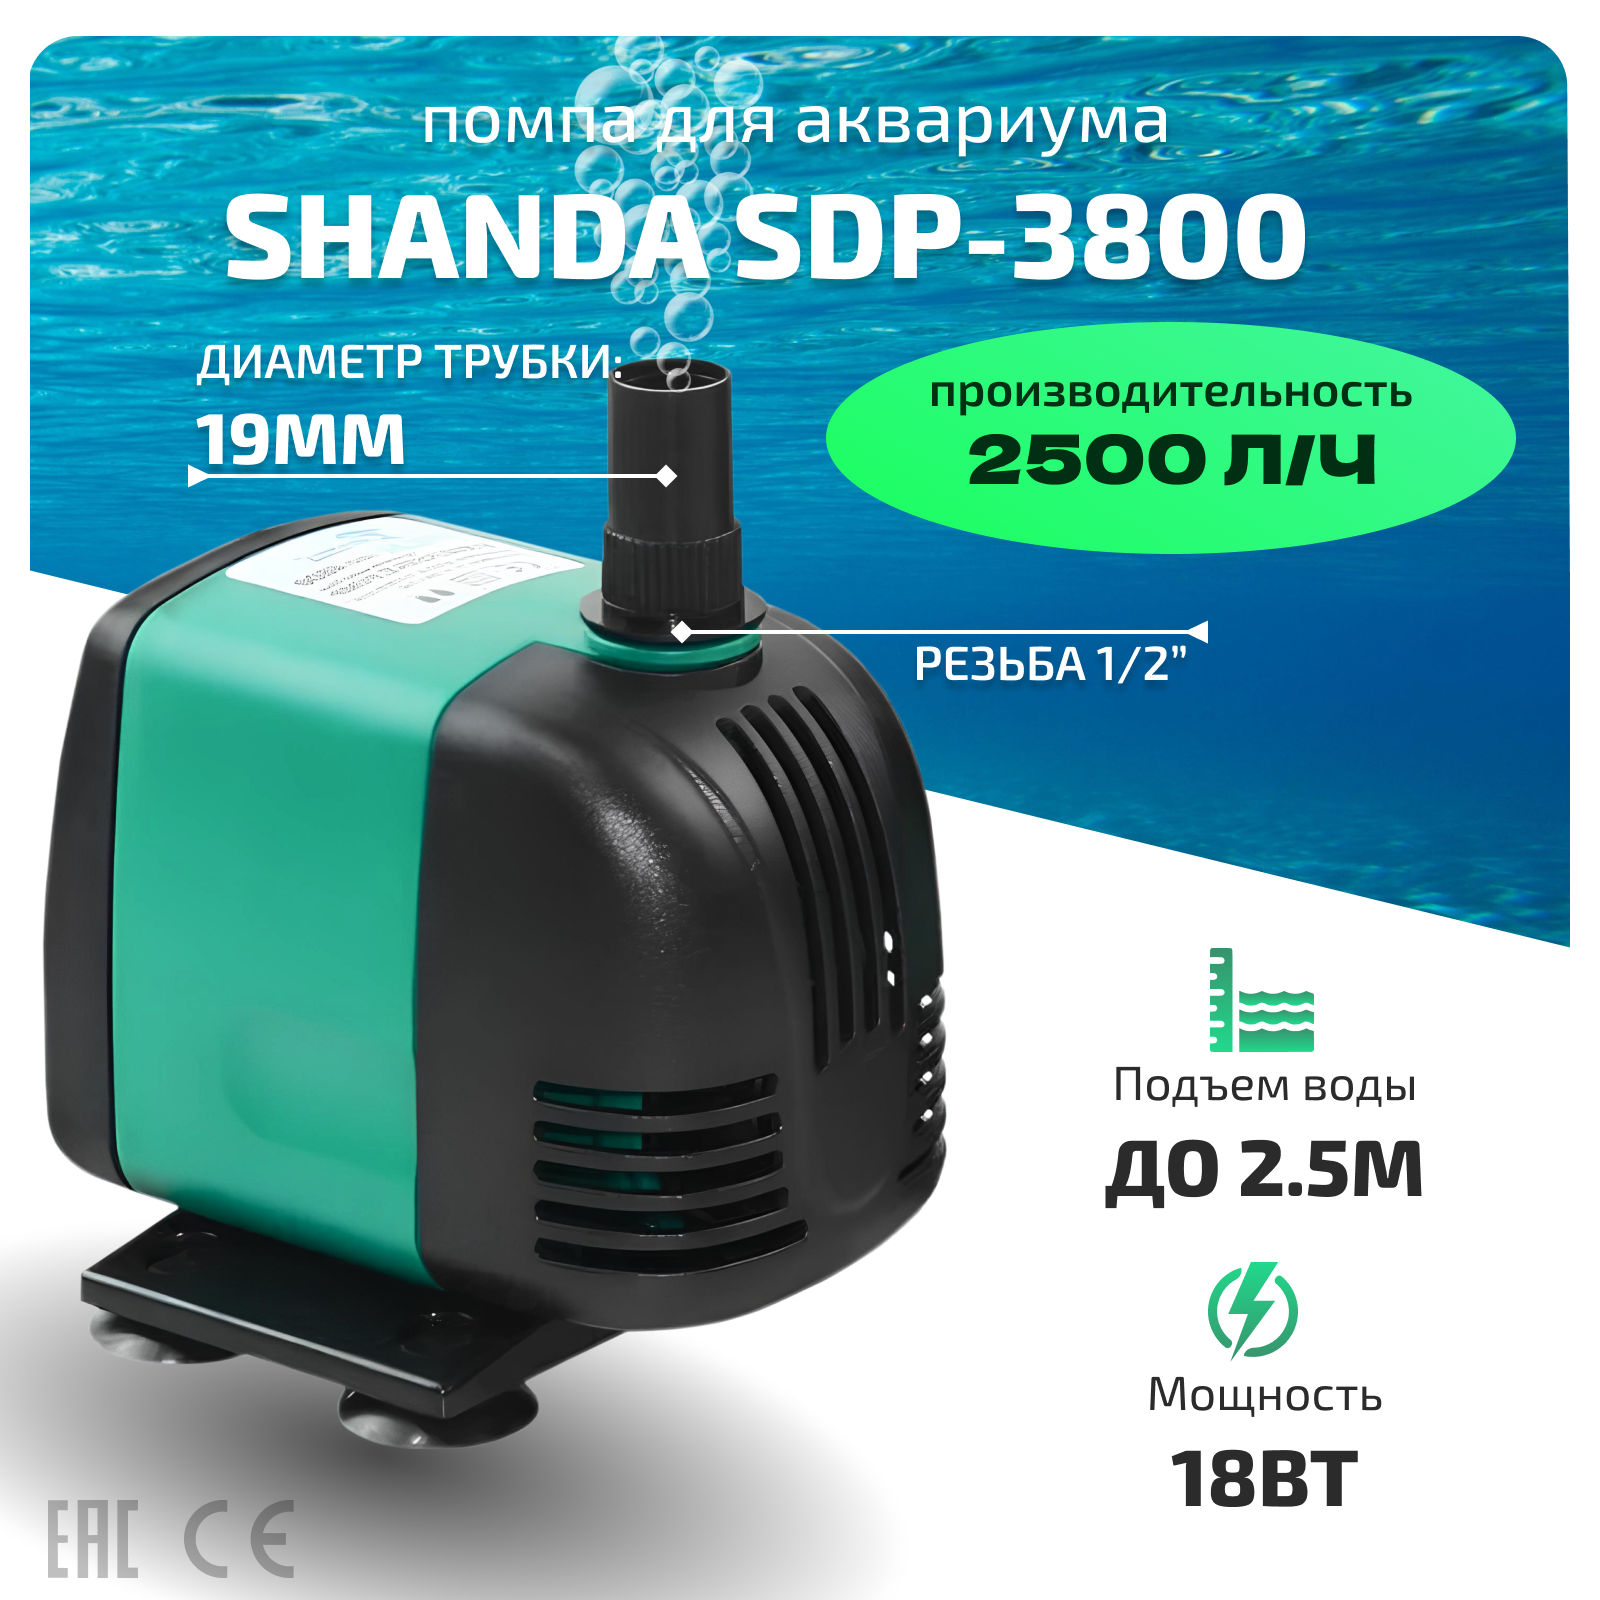 Водяная многофункциональная помпа SHANDA SDP-3800 для пресной и соленой воды в аквариум